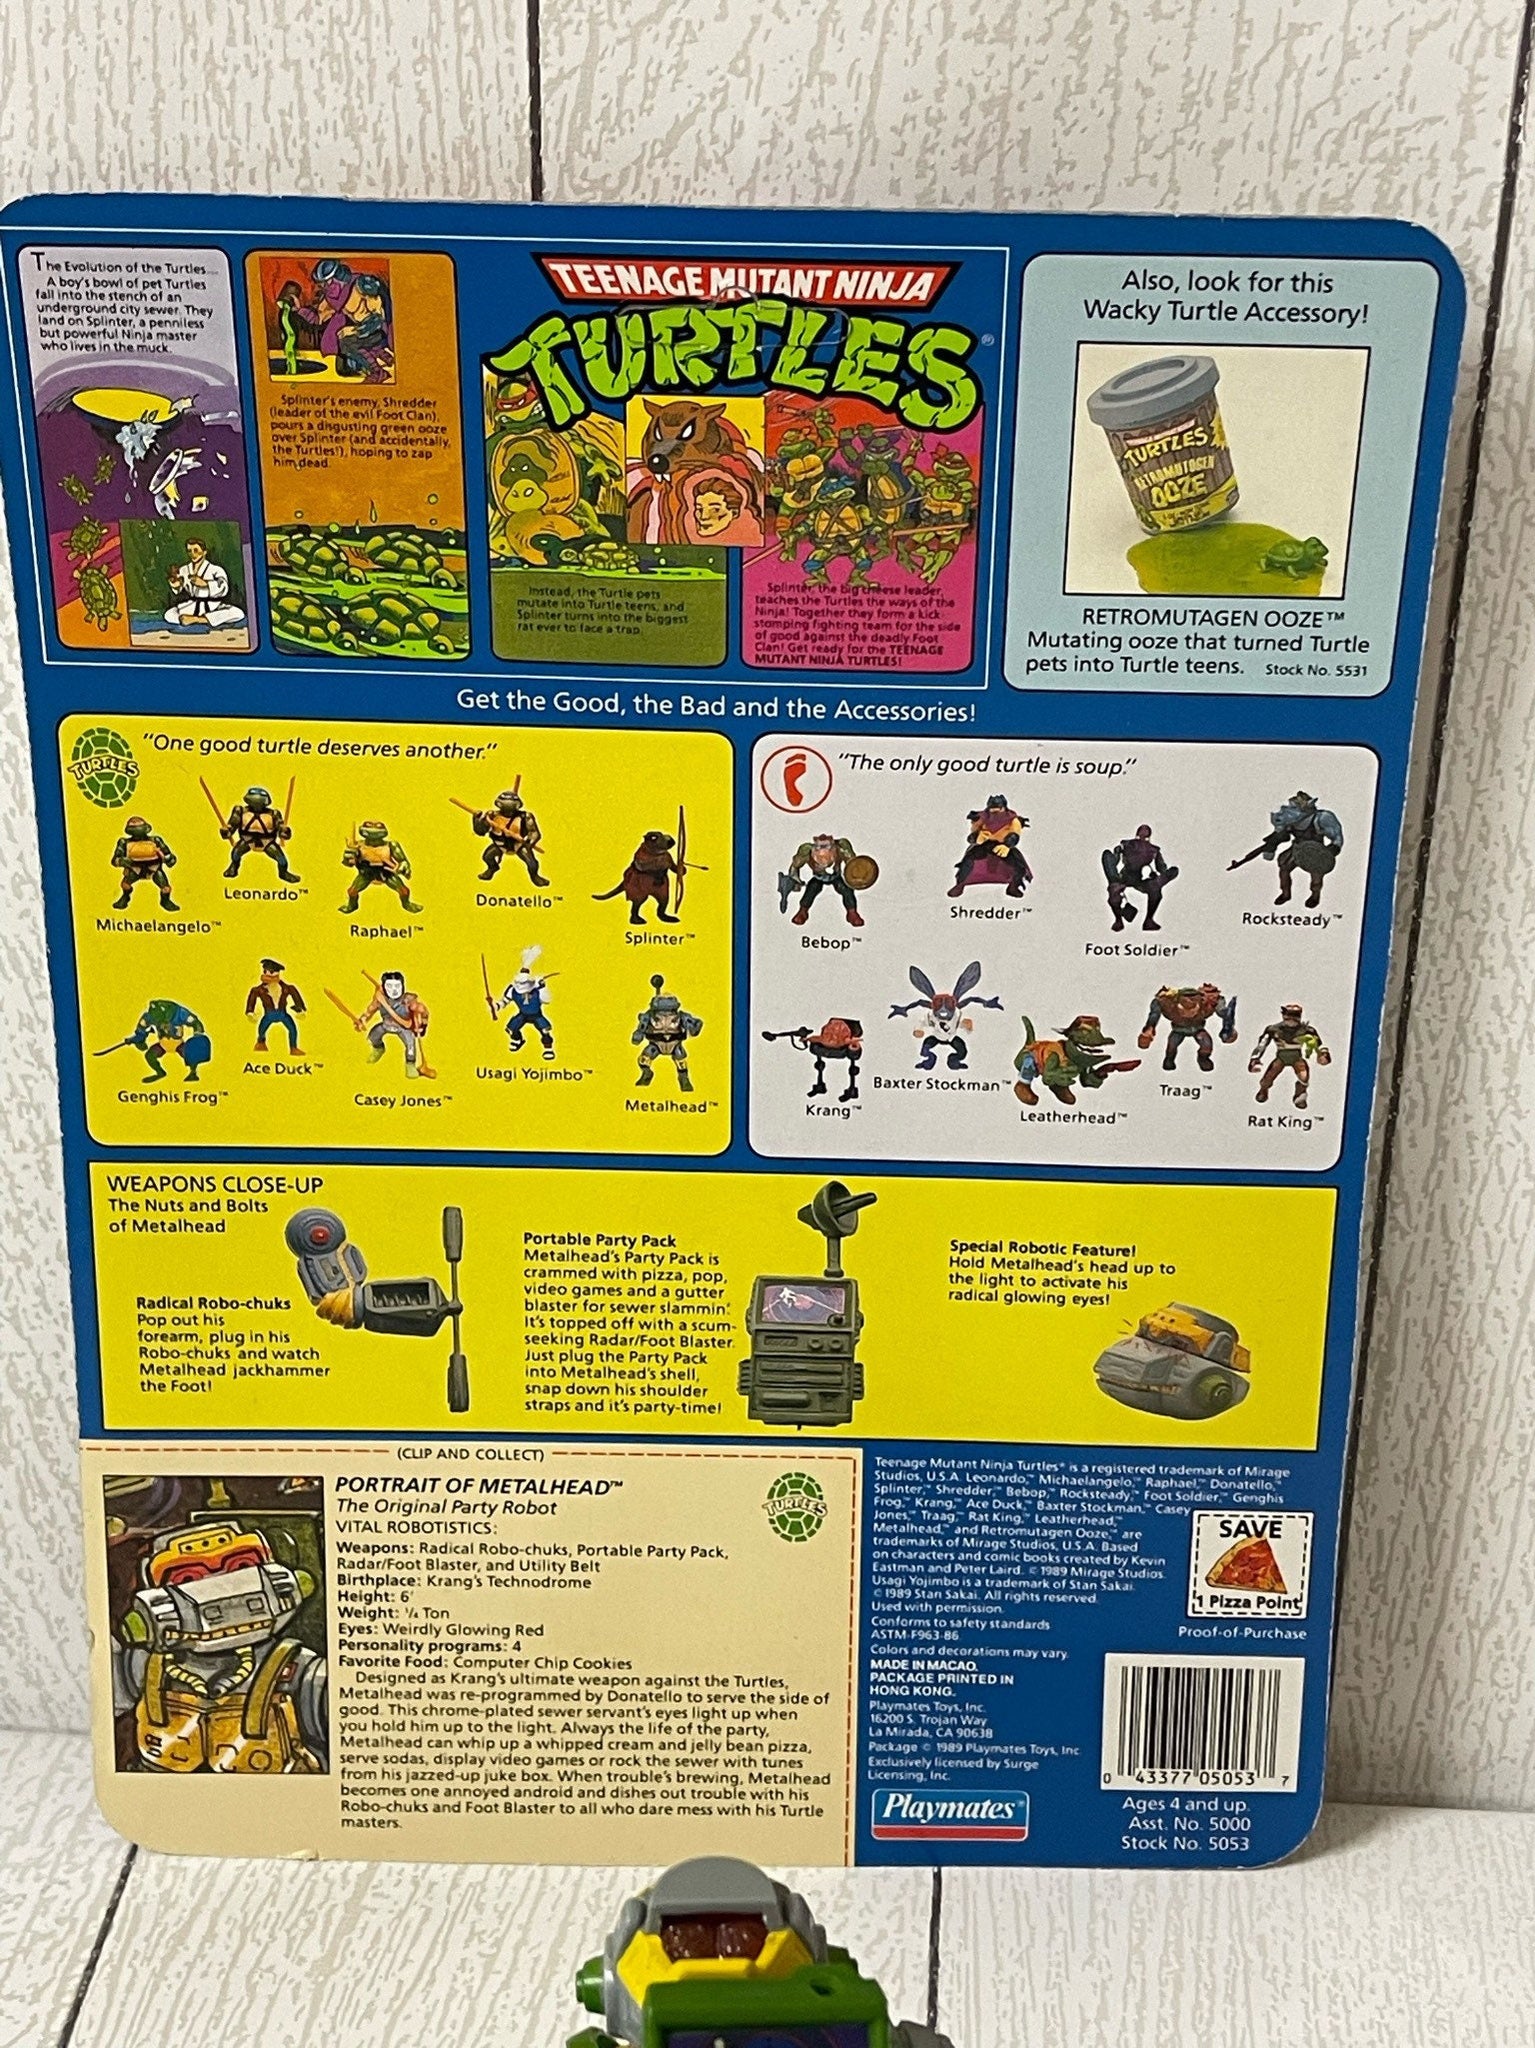 1989 Playmates TMNT Teenage Mutant Ninja Turtles Metalhead